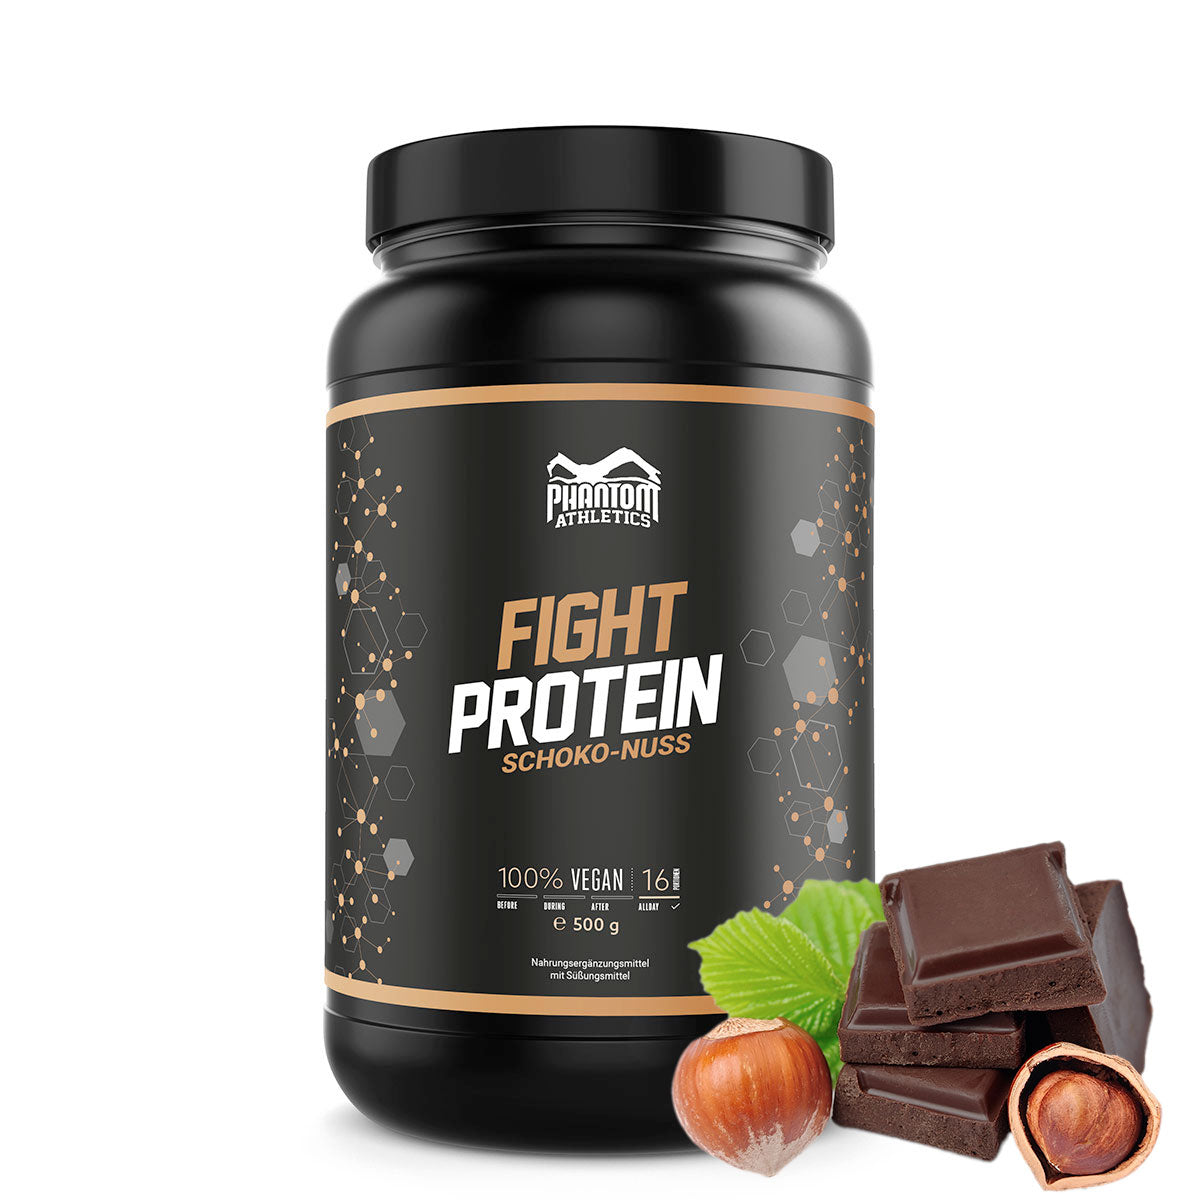 Phantom FIGHT-protein for kampsportutøvere med sjokoladesmak.